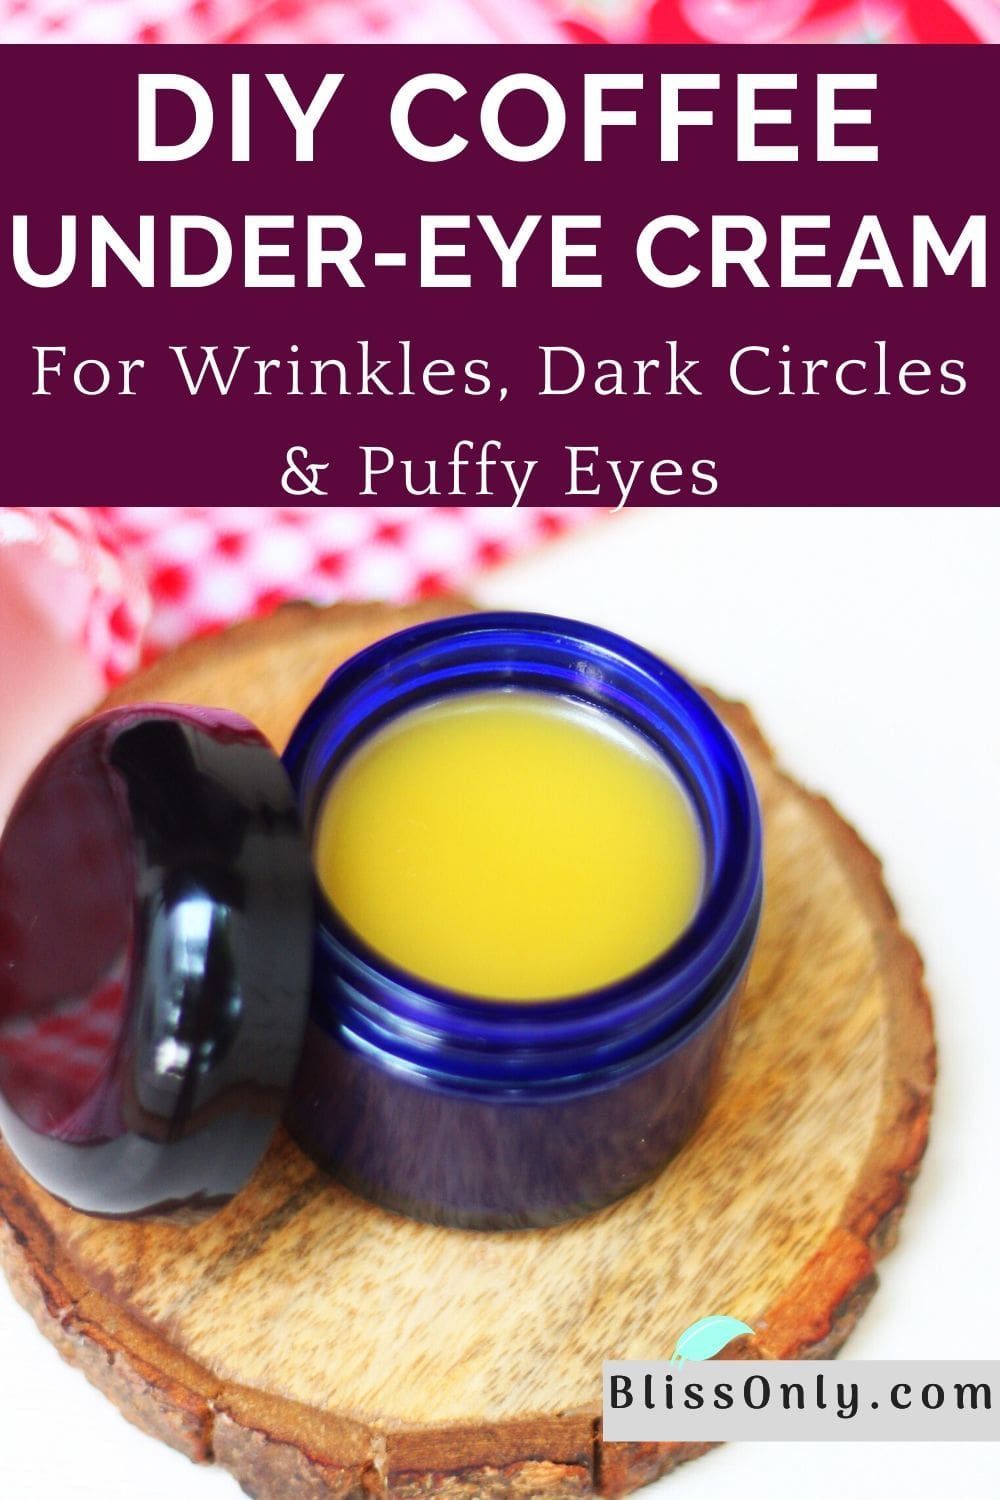 14 skin care For Wrinkles cream ideas